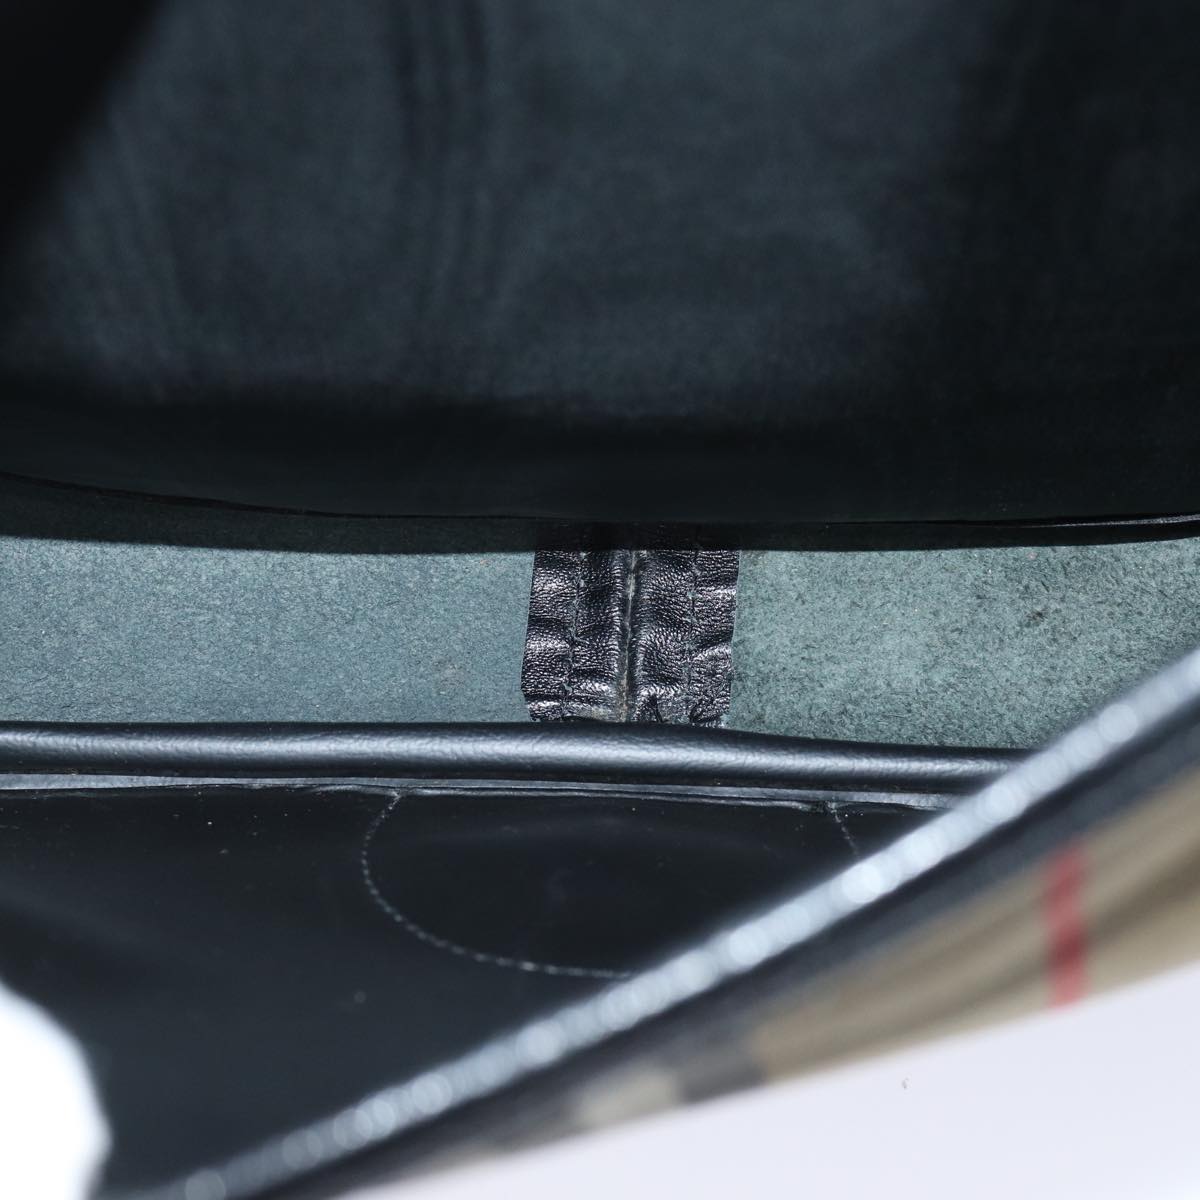 Burberrys Nova Check Shoulder Bag Canvas Beige Black Auth 70957